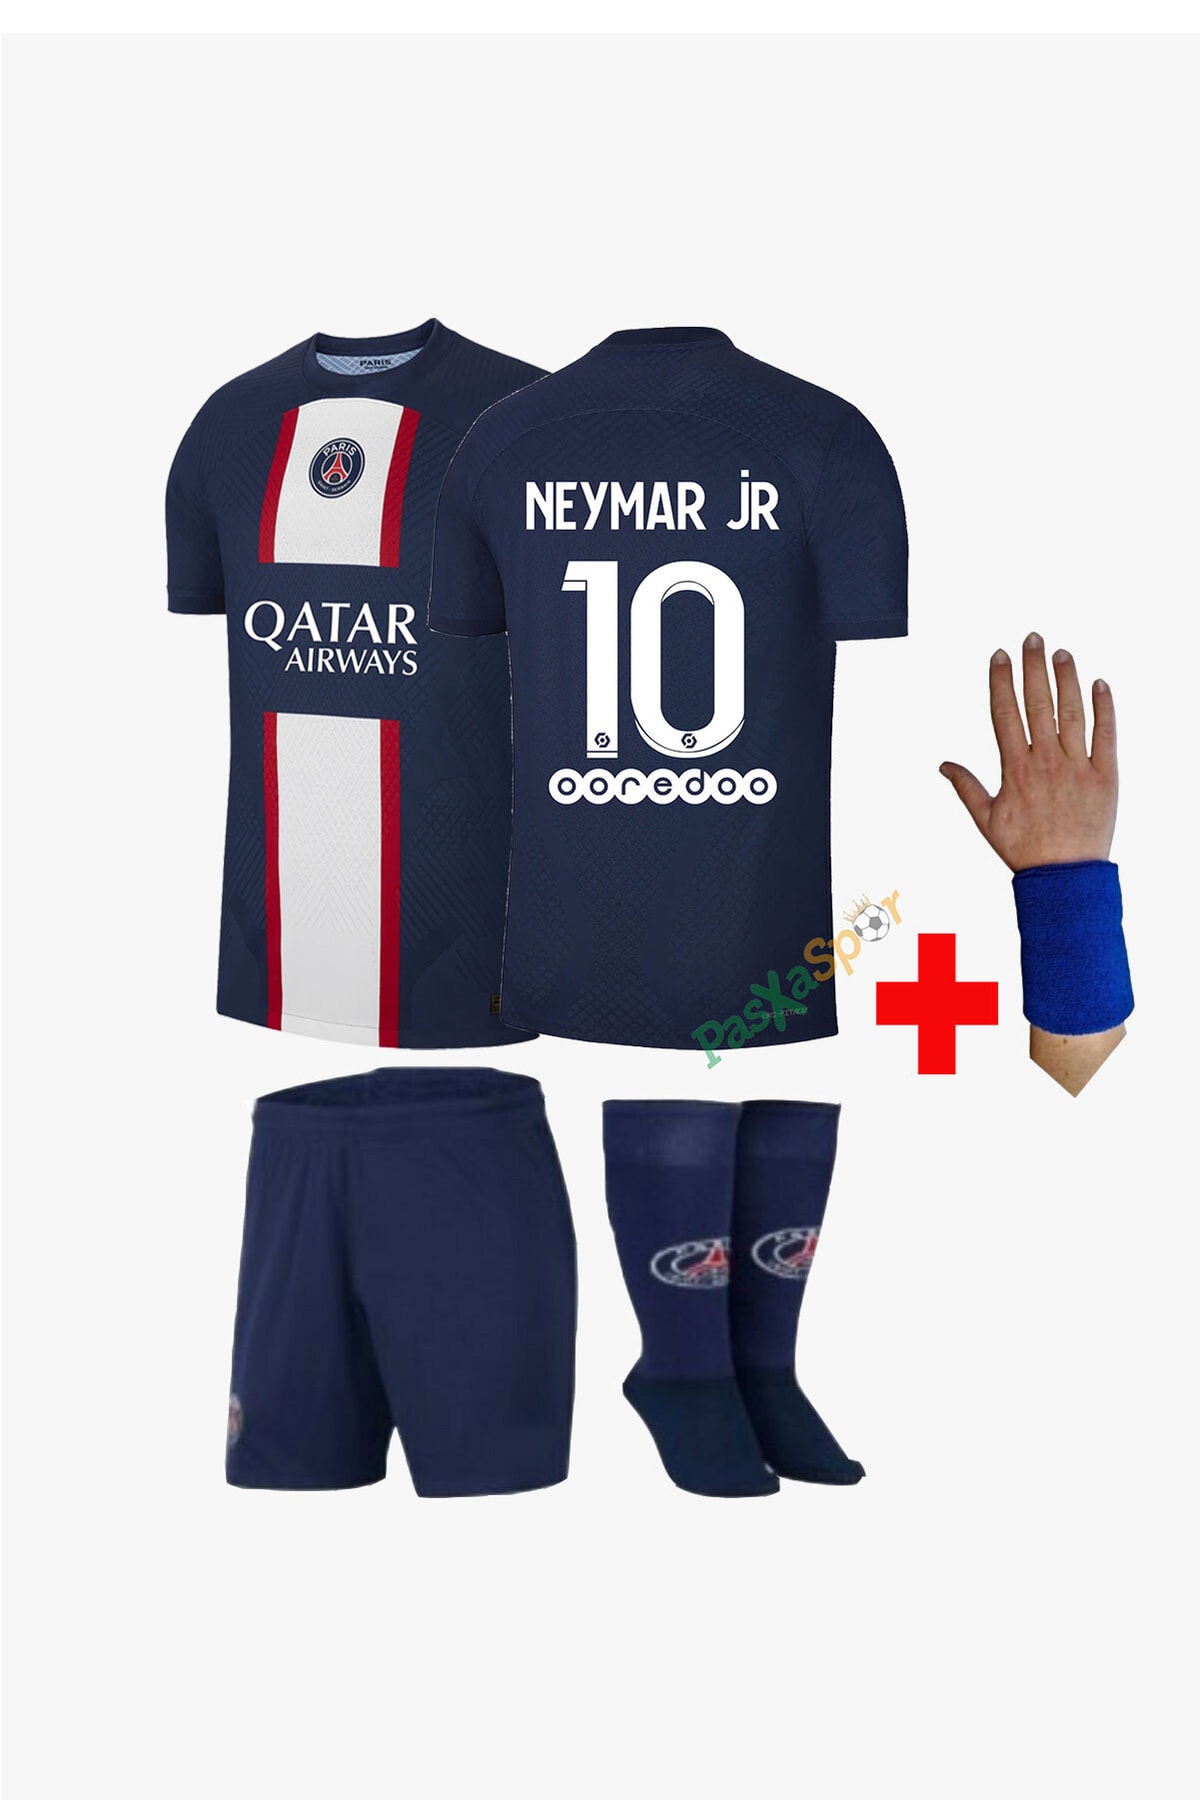 Pasxaspor Yeni Sezon Neymar Jr Iç Saha Çocuk Maç Forması Şort Çorap Bileklik Hediyeli